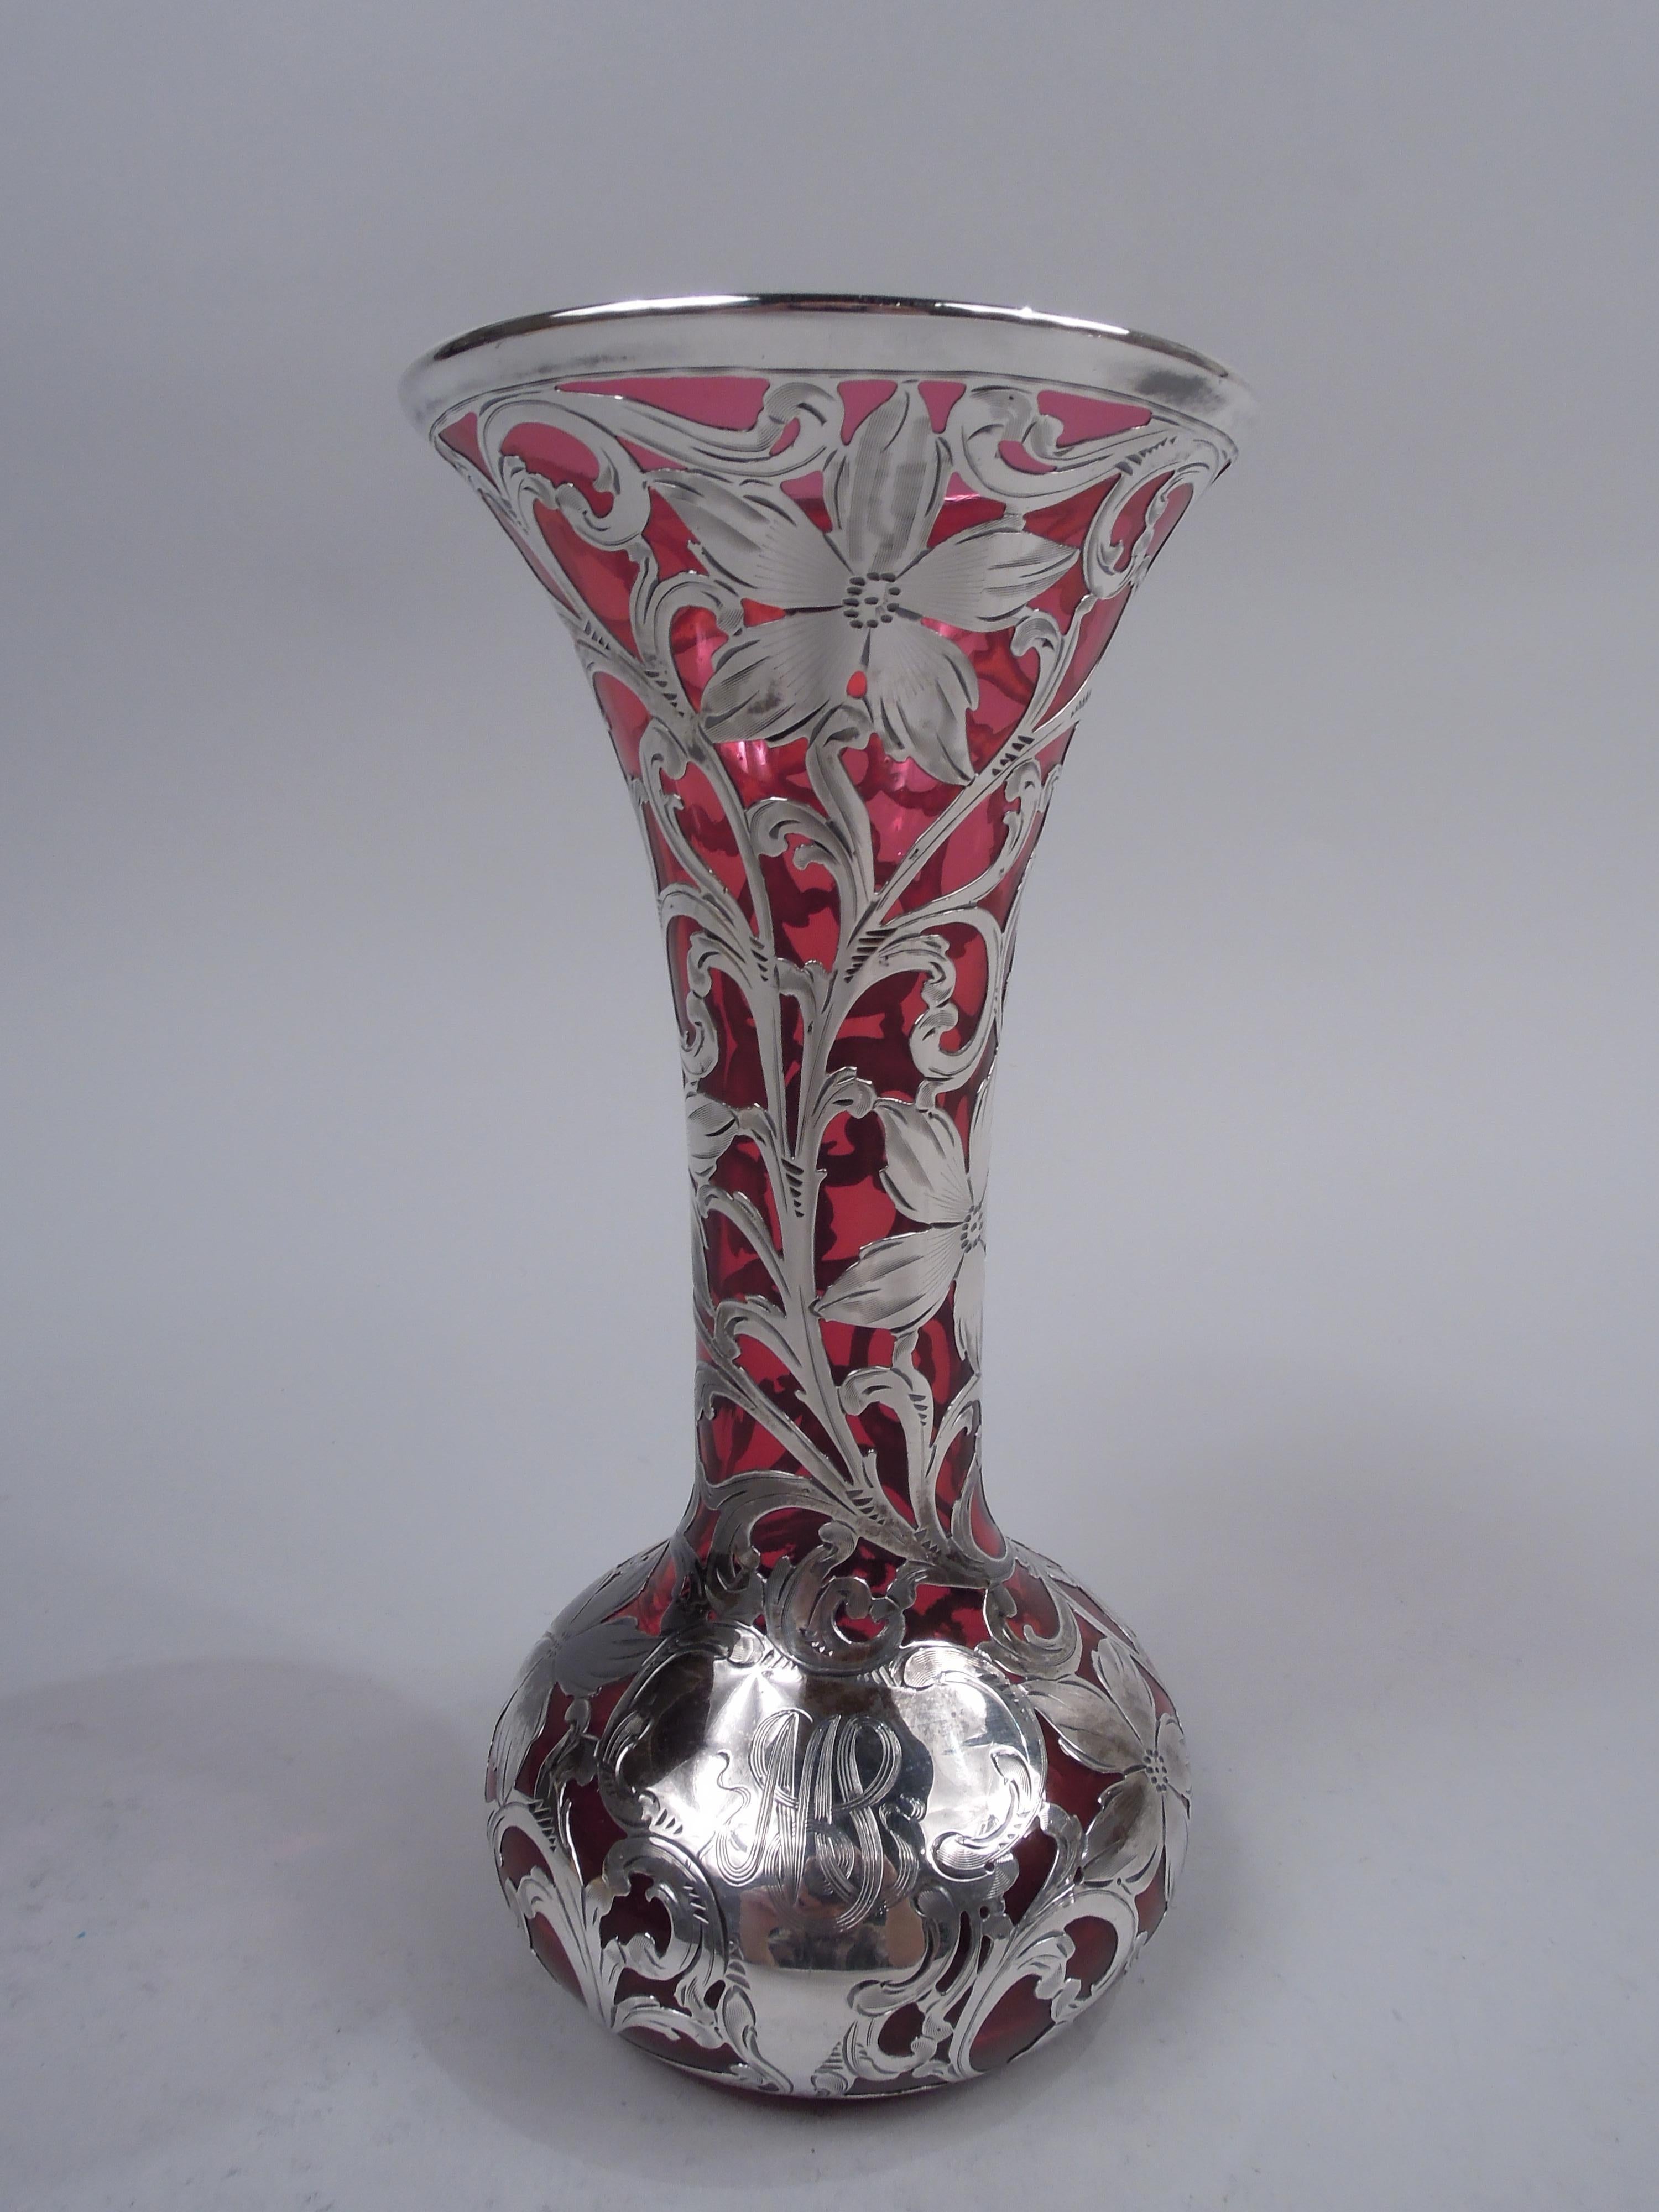 Vase en verre de style Art Nouveau, avec un revêtement en argent gravé. Fabriqué par Alvin Corp. à Providence, vers 1900. Embouchure et col coniques, et bol ventru. Superposition en forme de rinceaux feuillagés denses et de fleurs ; cartouche à